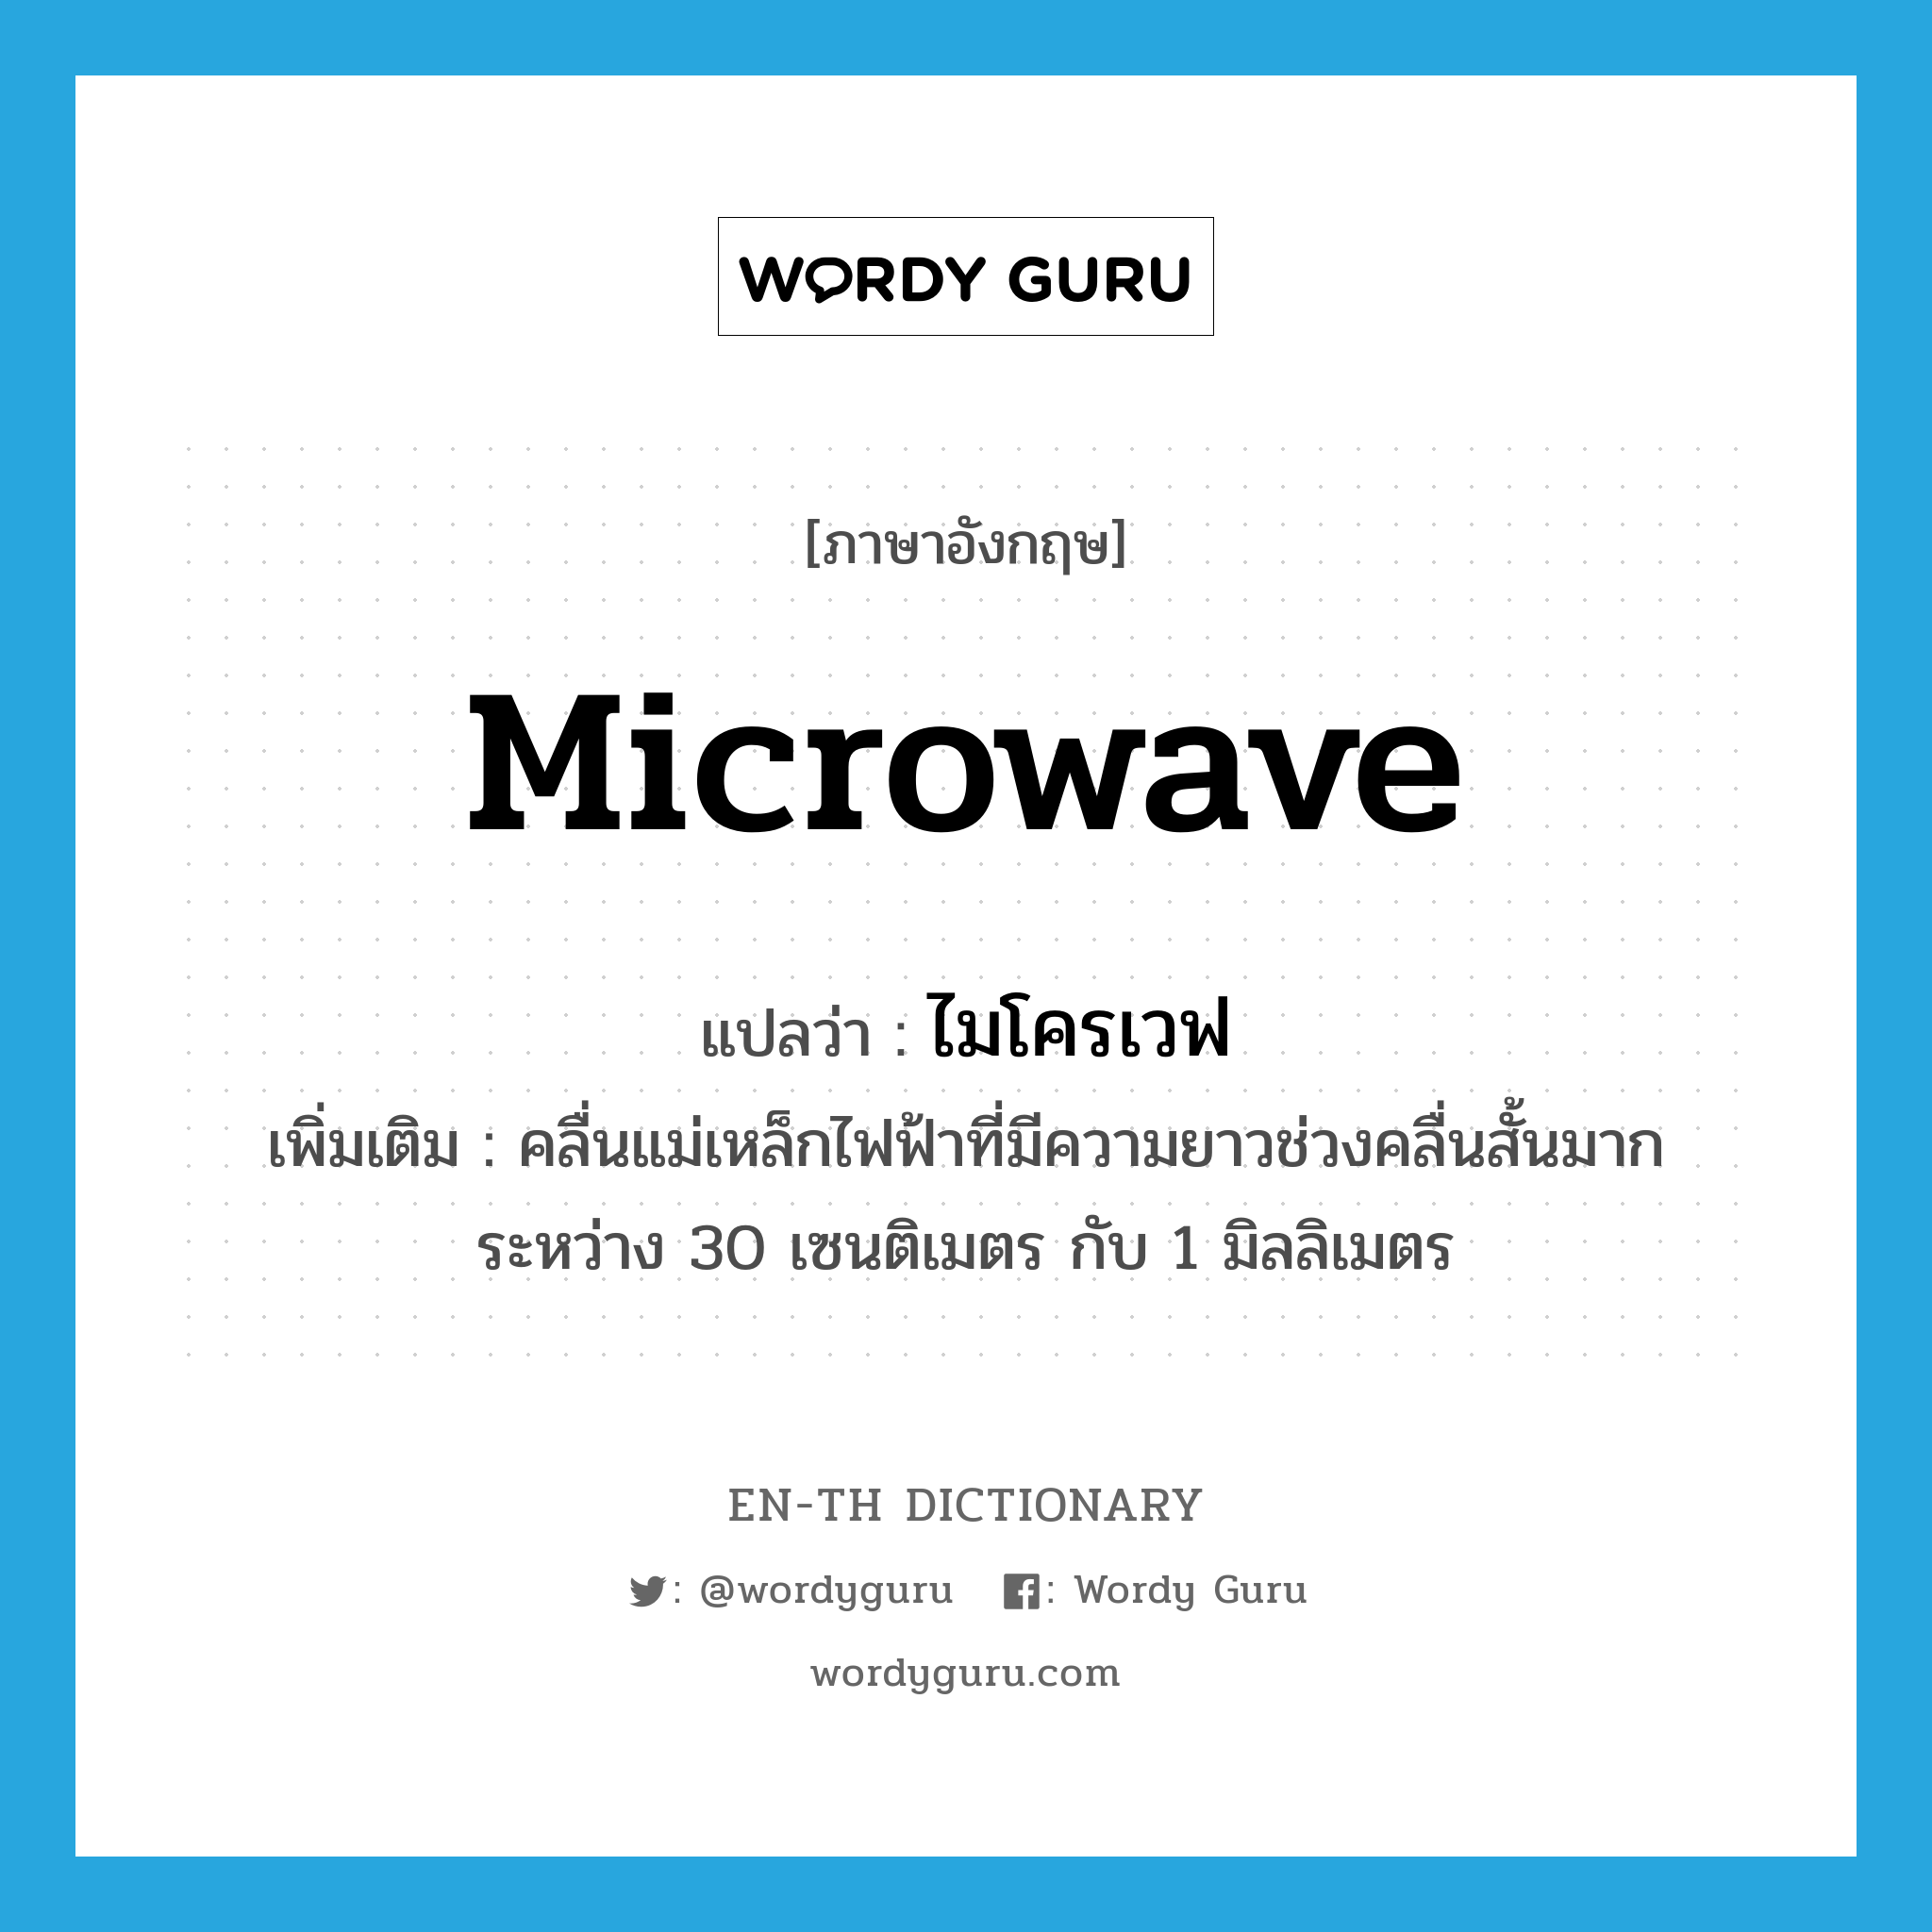 ไมโครเวฟ ภาษาอังกฤษ?, คำศัพท์ภาษาอังกฤษ ไมโครเวฟ แปลว่า microwave ประเภท N เพิ่มเติม คลื่นแม่เหล็กไฟฟ้าที่มีความยาวช่วงคลื่นสั้นมาก ระหว่าง 30 เซนติเมตร กับ 1 มิลลิเมตร หมวด N